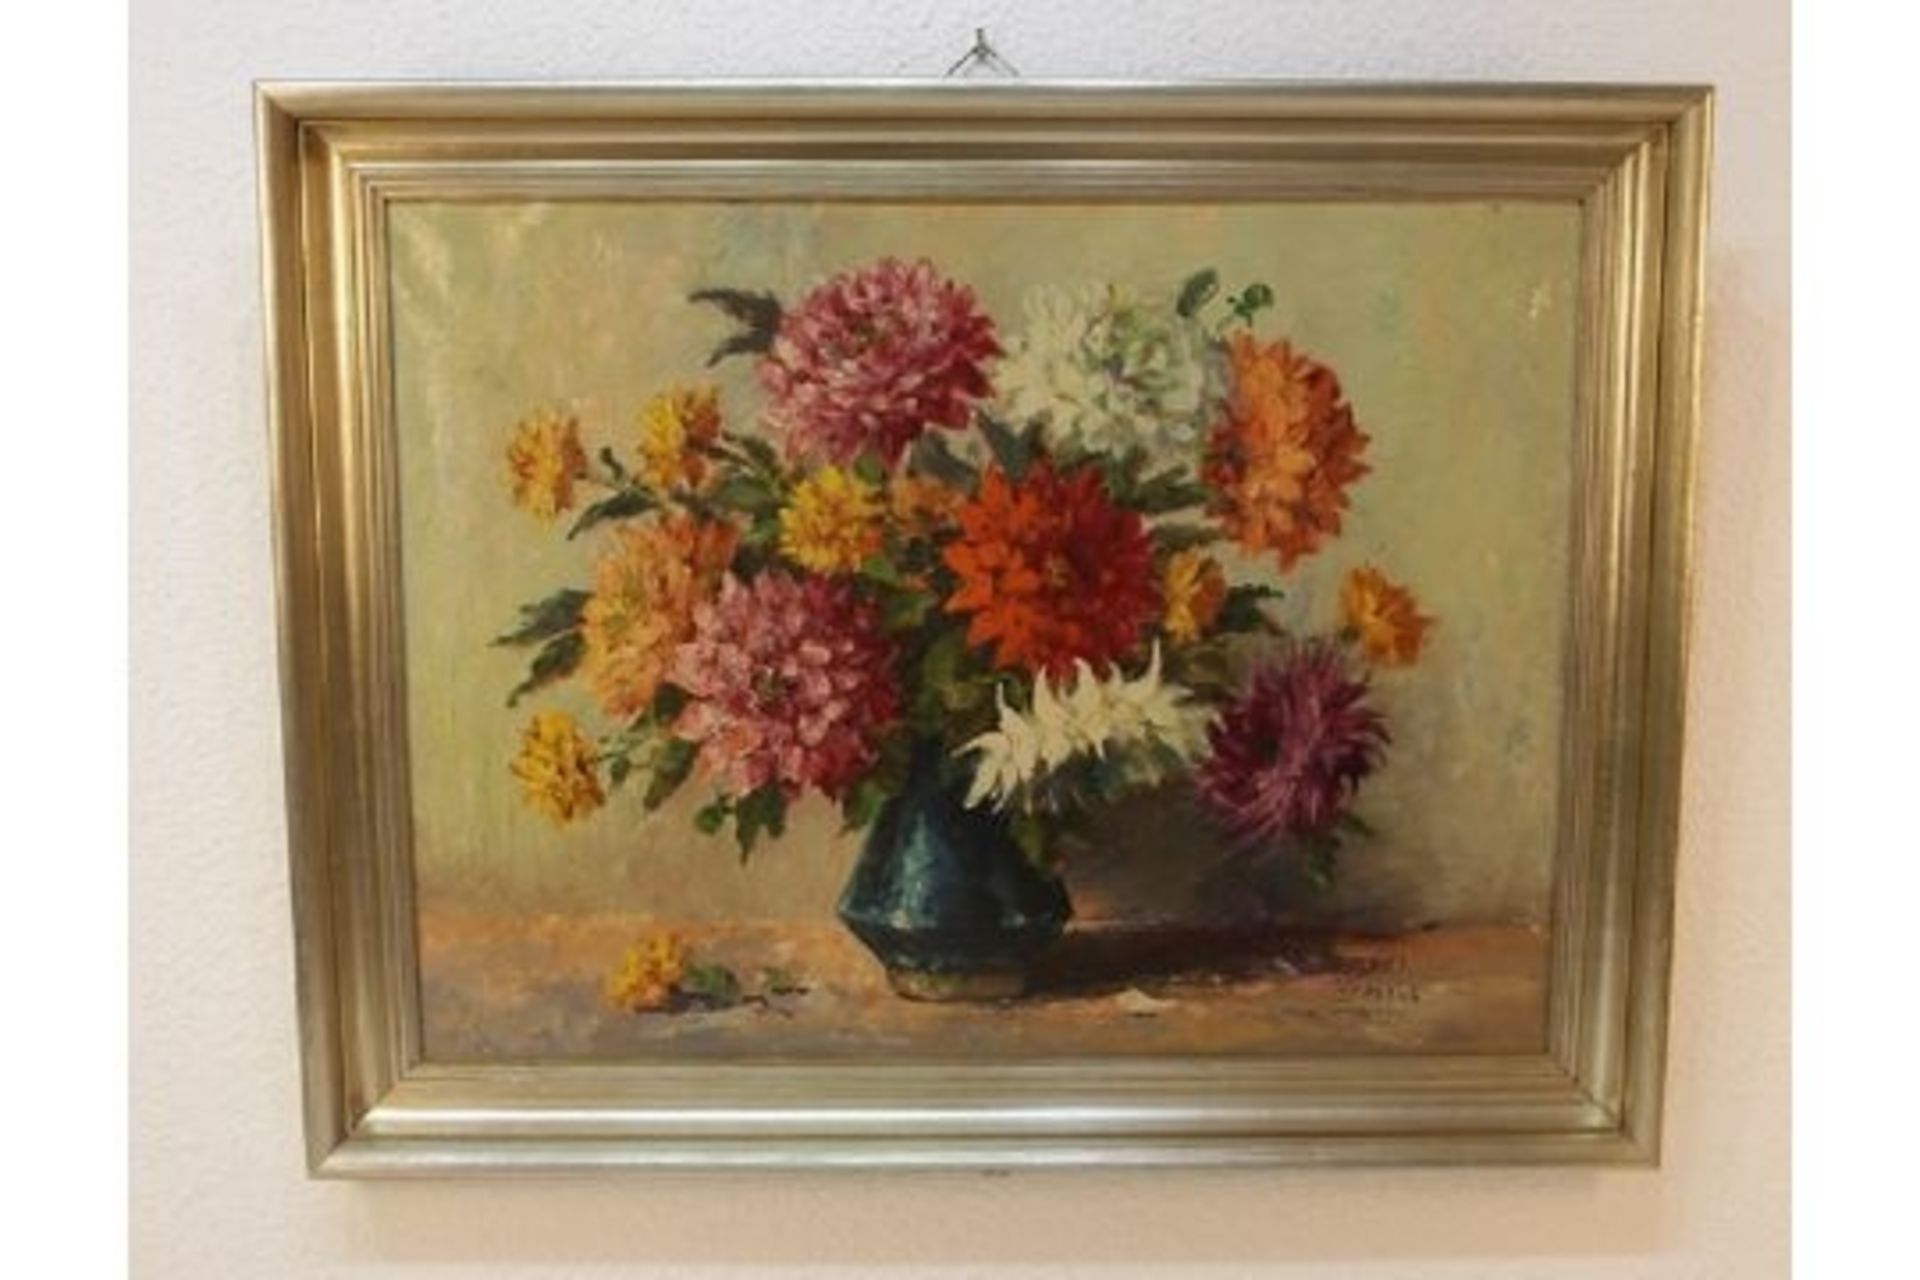 Großes Ölbild "Stevens" Blumenstilleben 95 x 75cm - Bild 2 aus 6